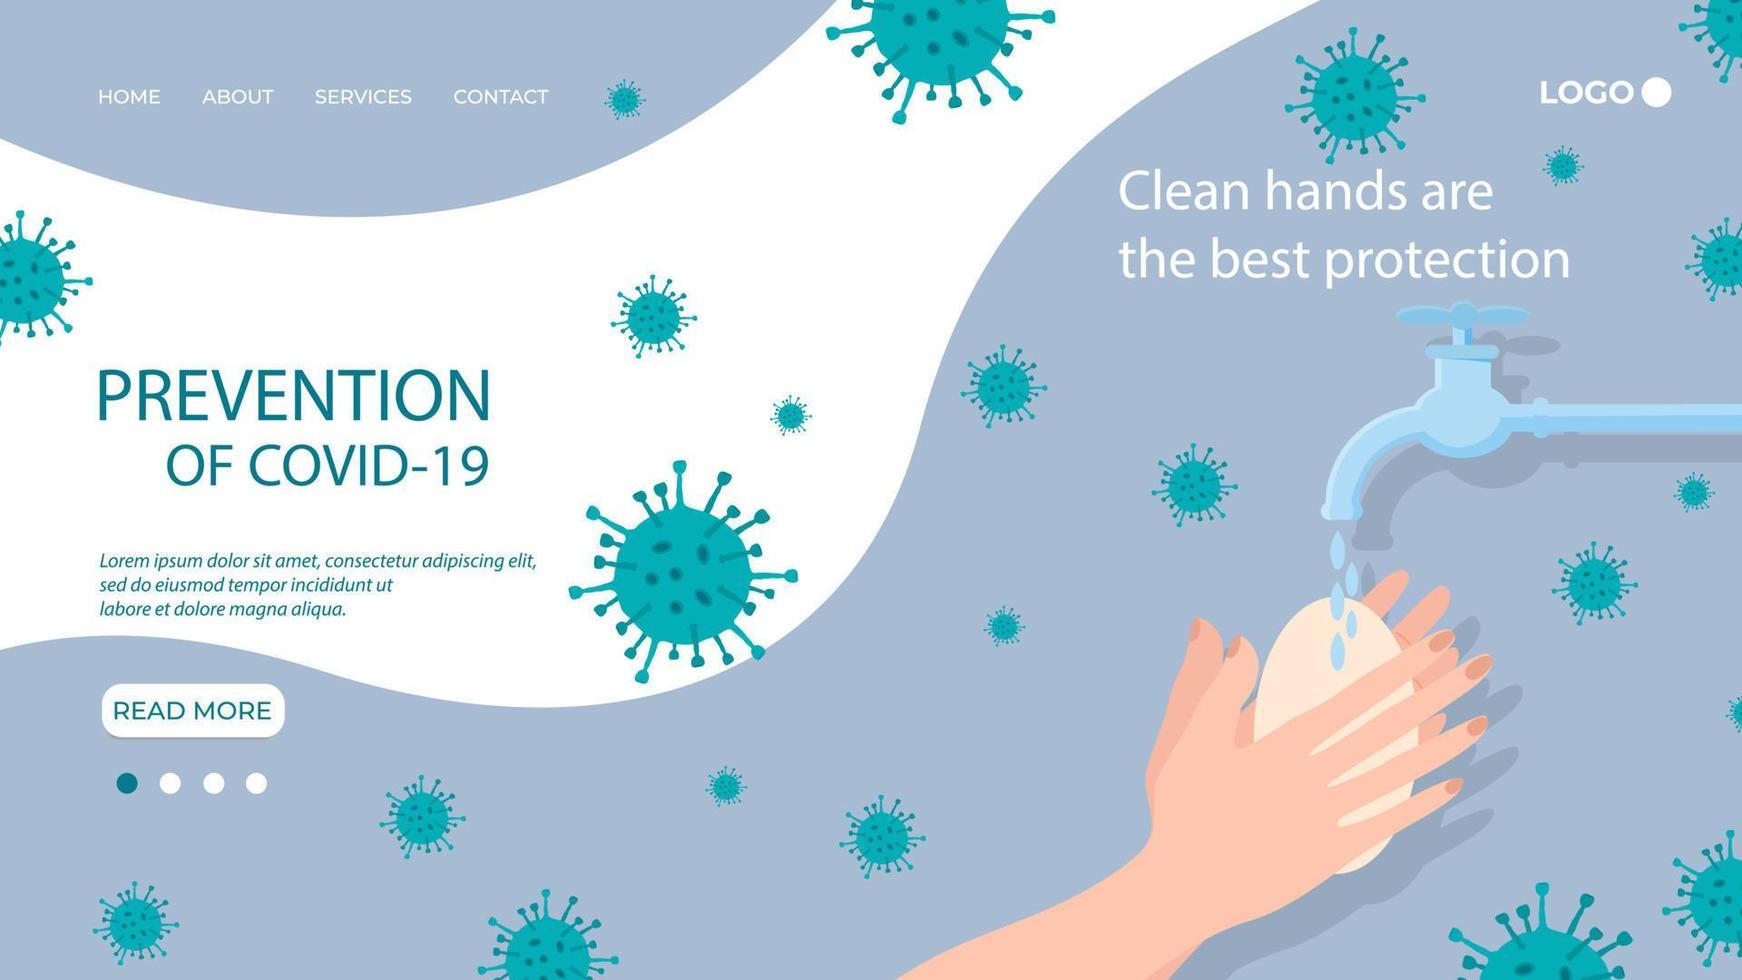 lávese las manos.las manos limpias son la mejor protección.cartel informativo: una pancarta o postal con un recordatorio para lavarse las manos.prevención del coronavirus en el contexto de la epidemia. vector